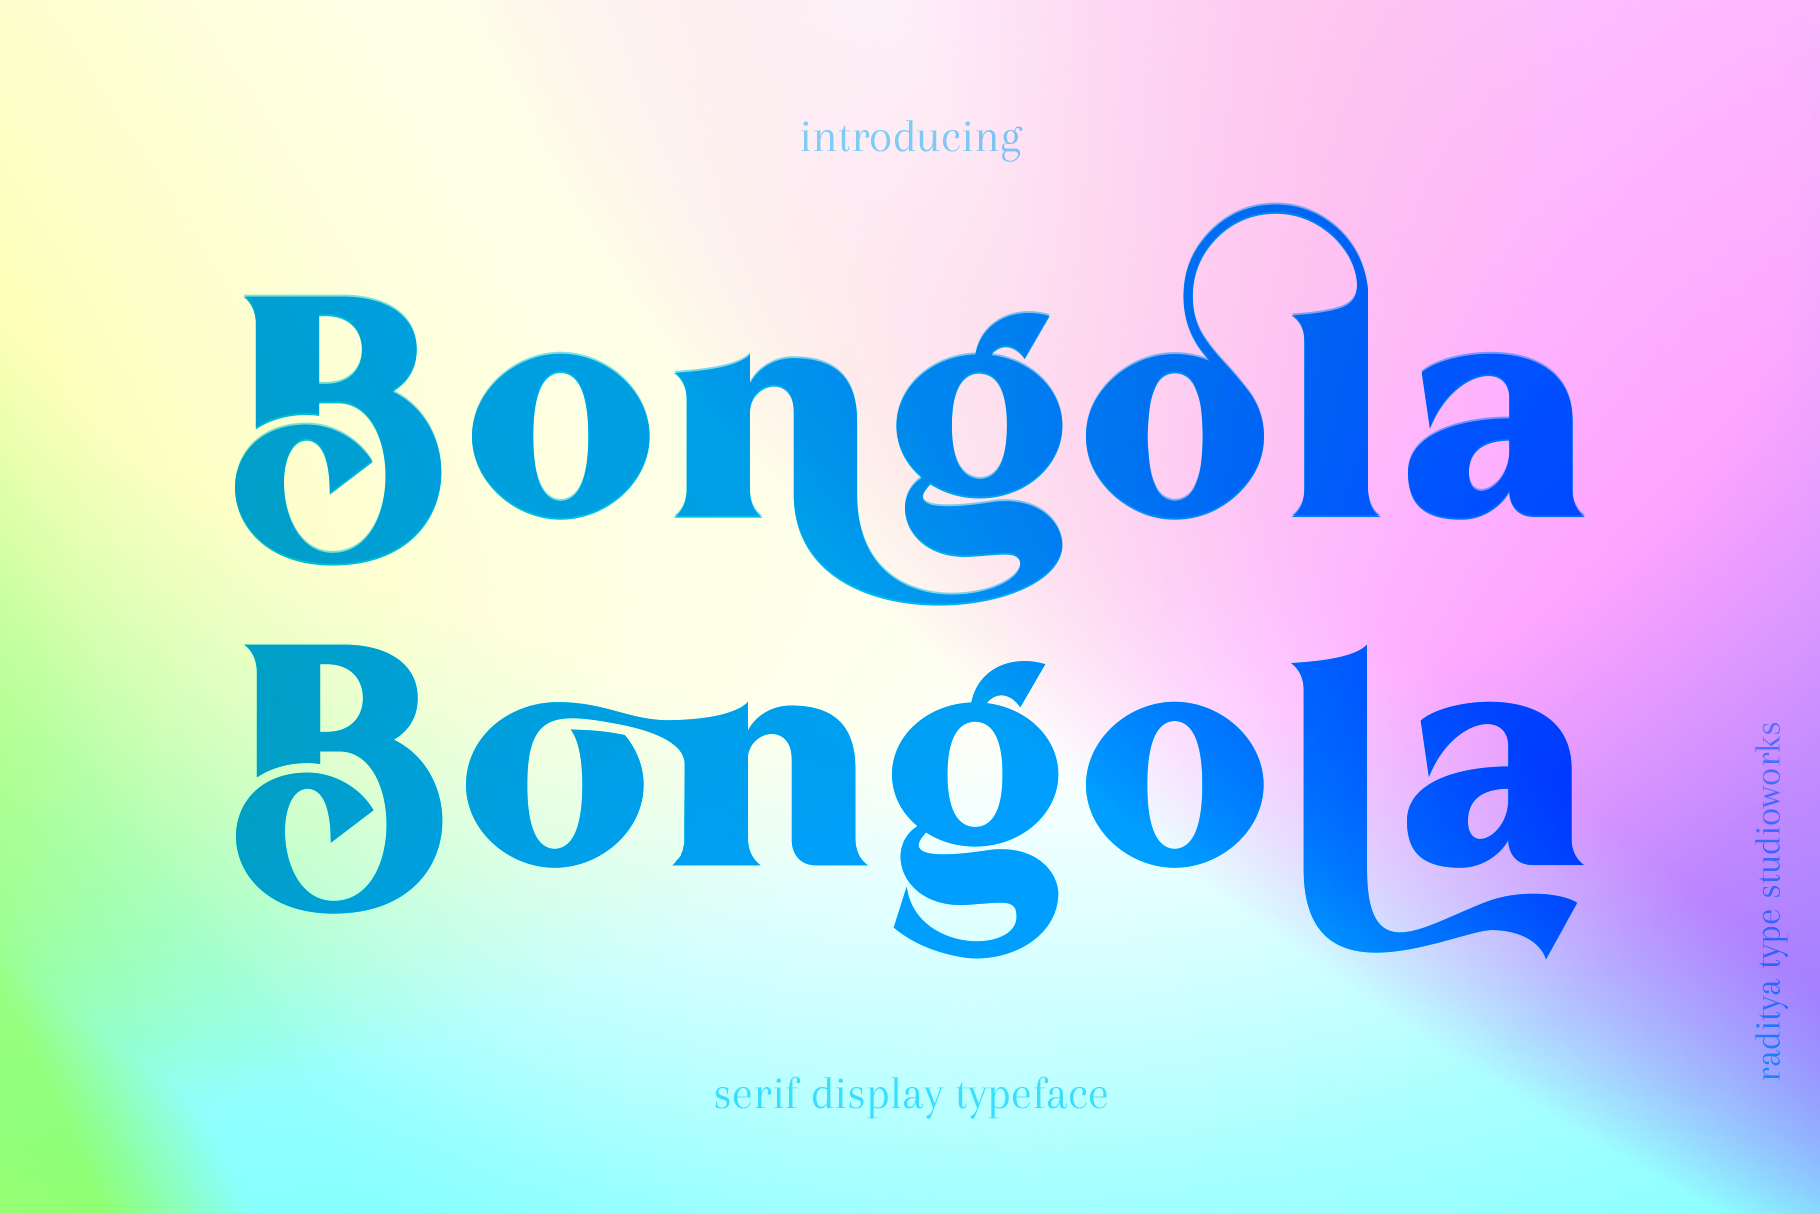 Bongola